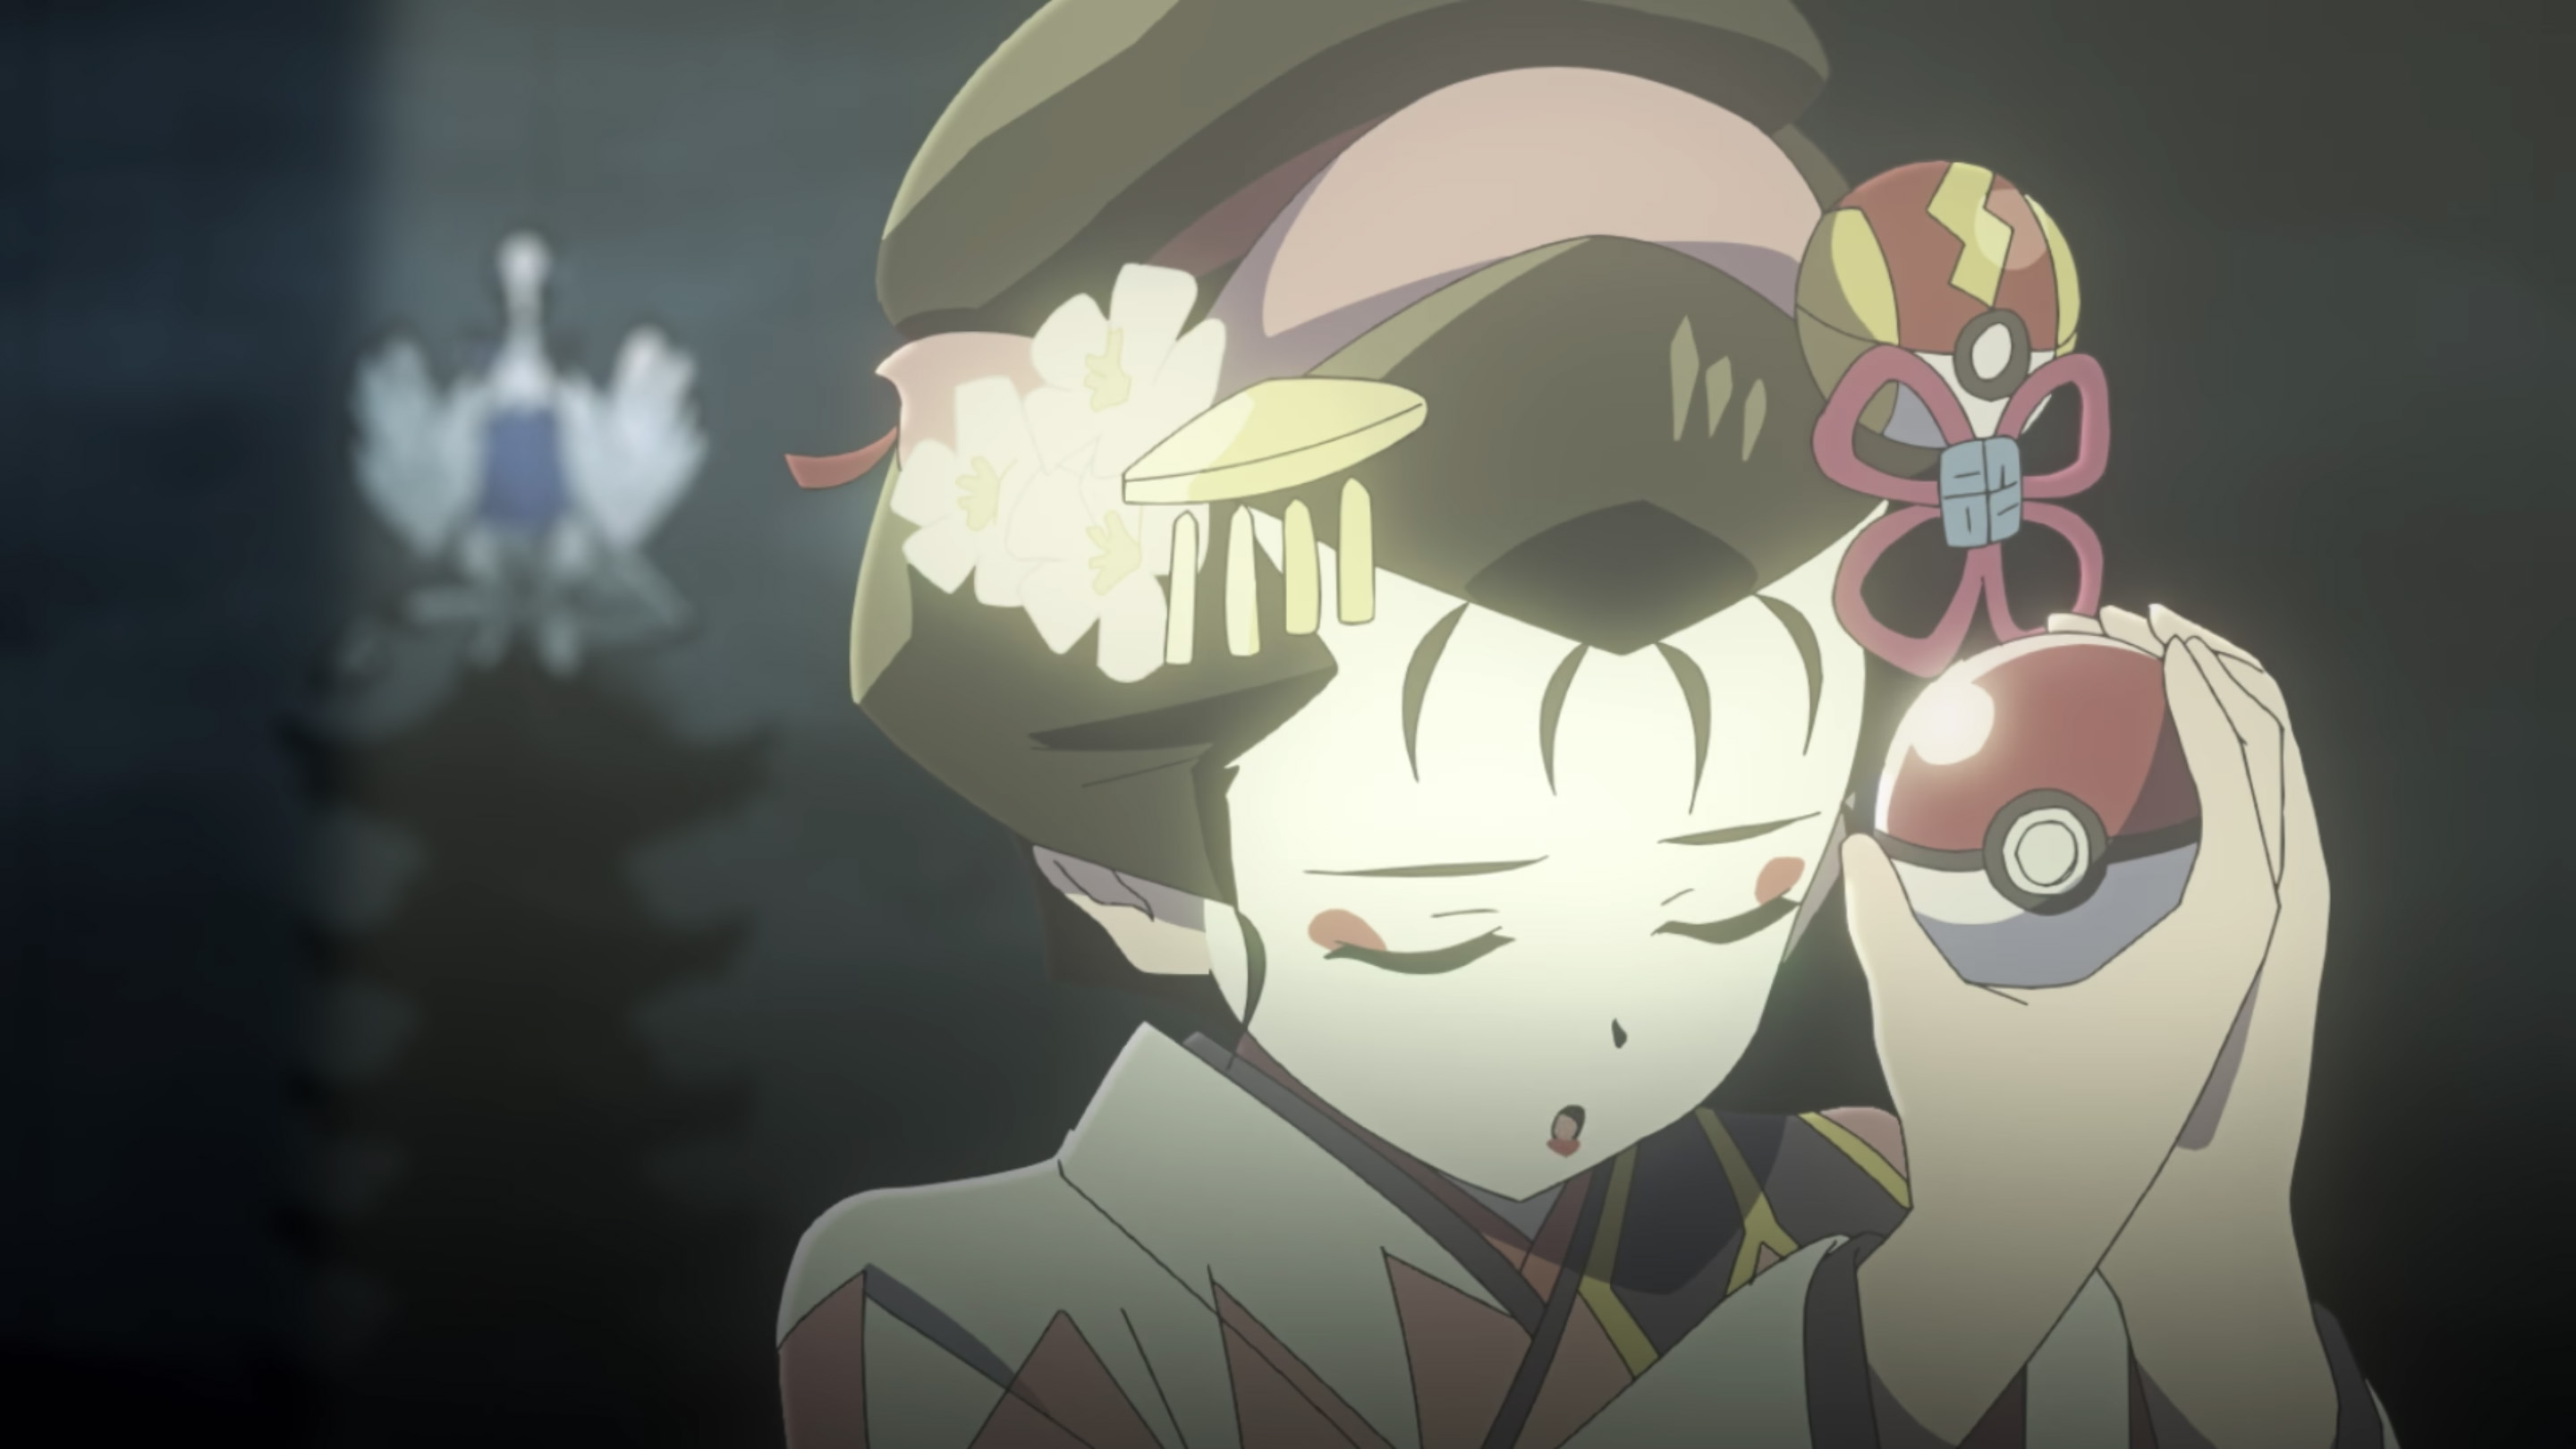 Crunchyroll Kimono Girls Dazzle in Newest Pokémon